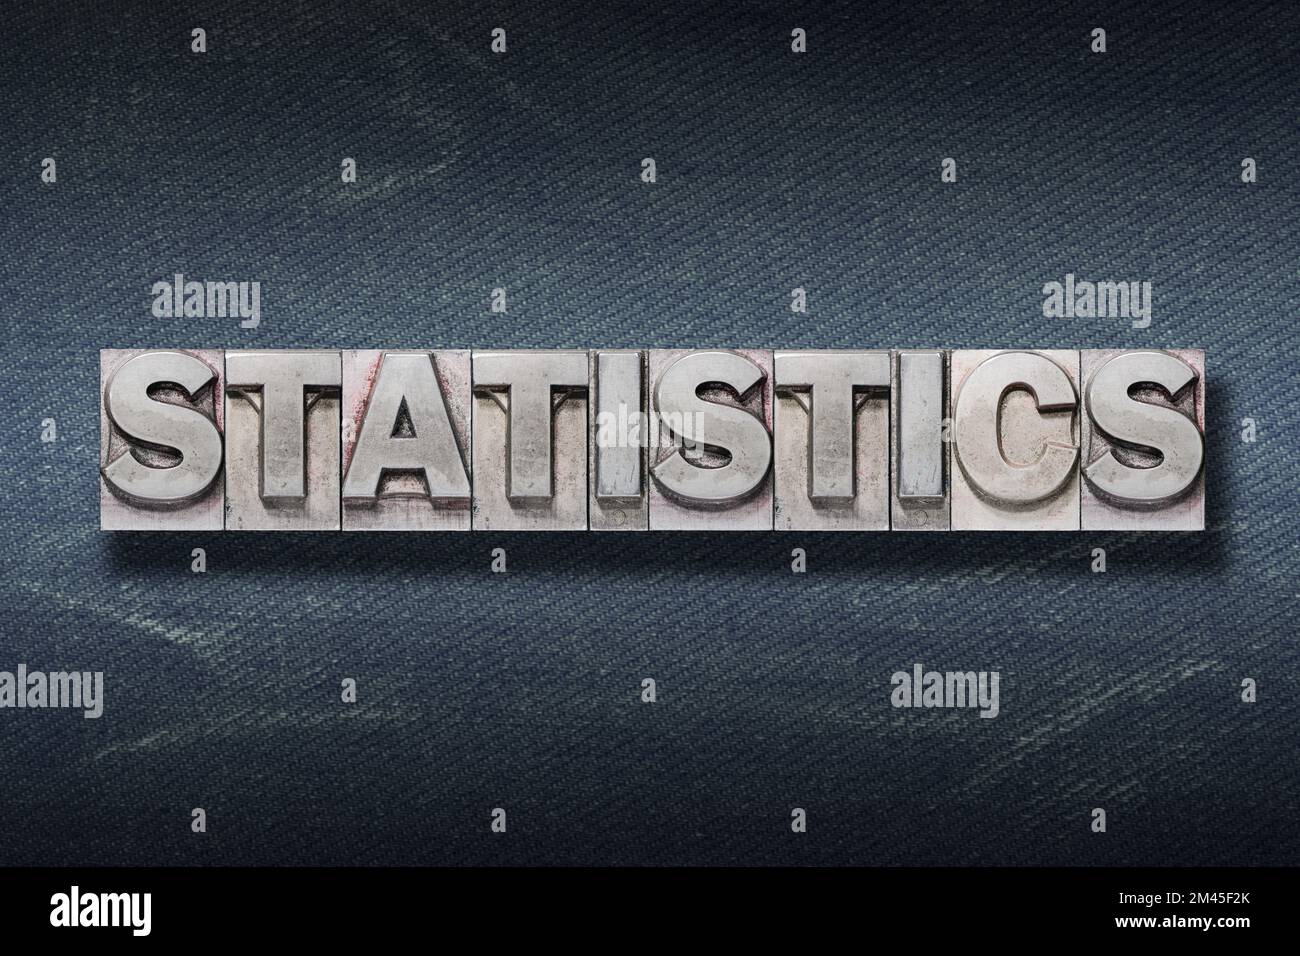 Statistikwort aus Metallic-Buchdruck auf dunklem Jeans-Hintergrund Stockfoto